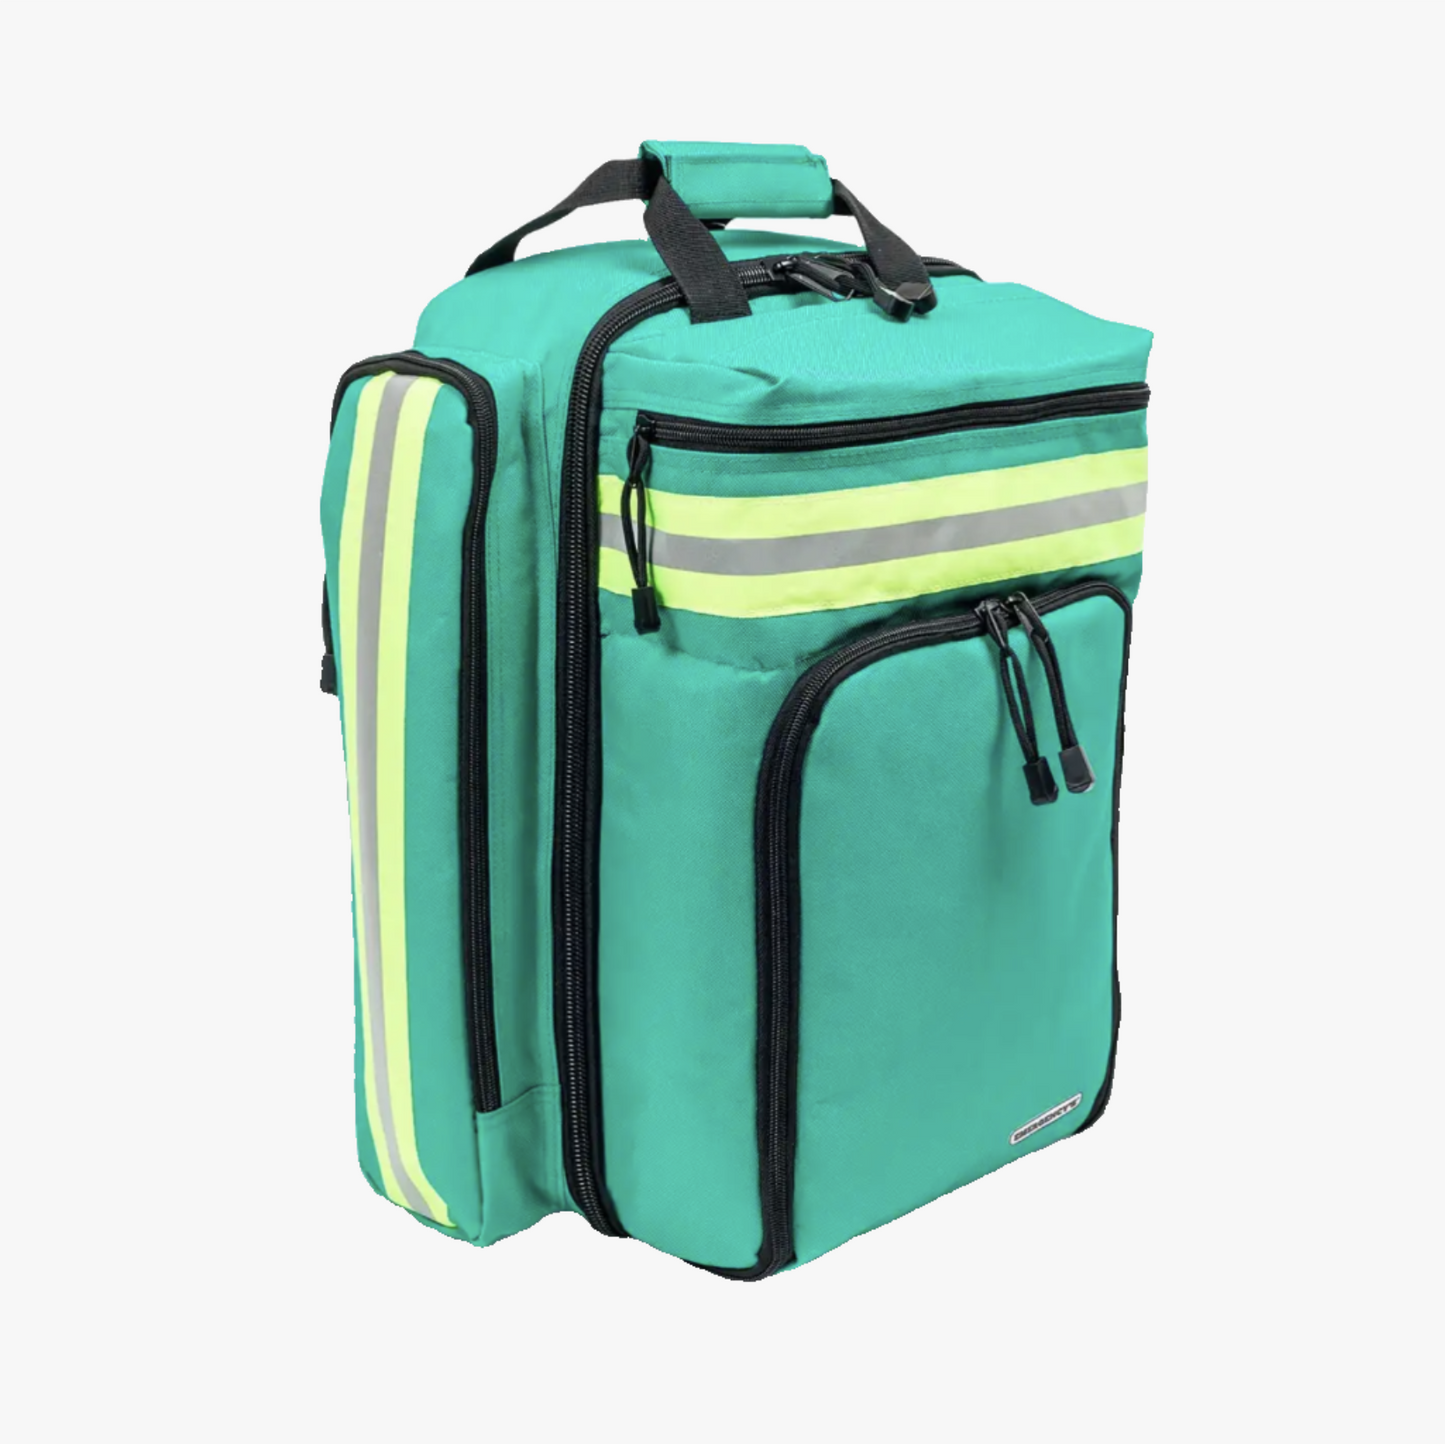 Emergency emergency backpack green